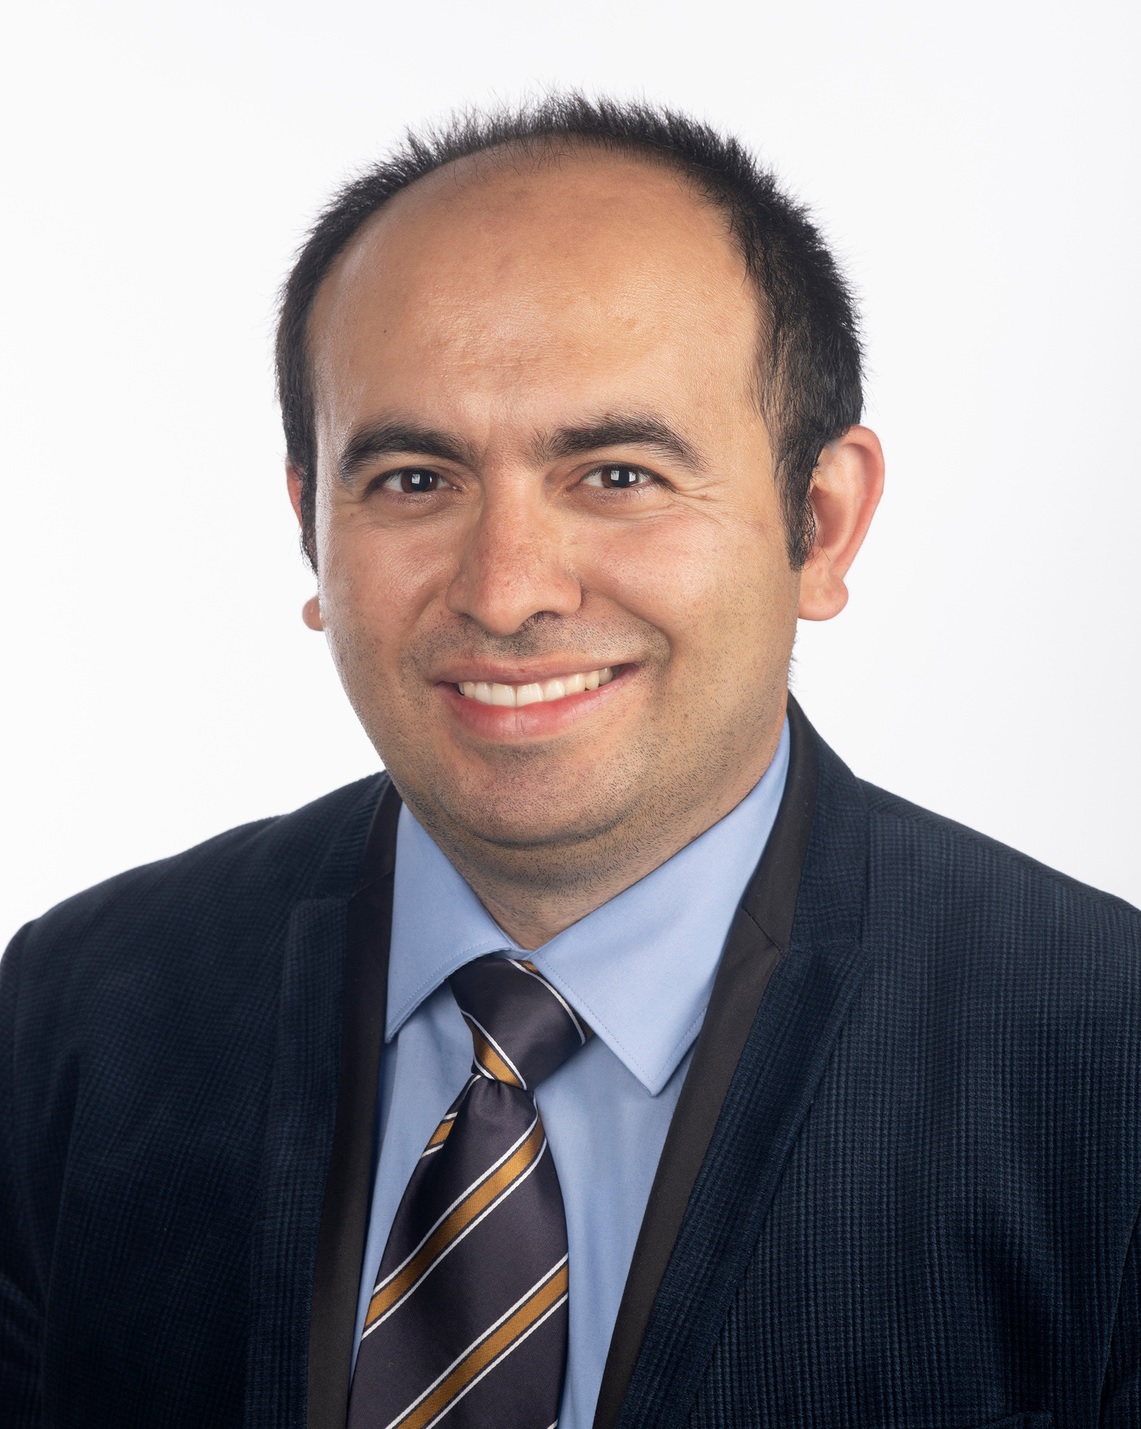 Ahmet Coskun, PhD